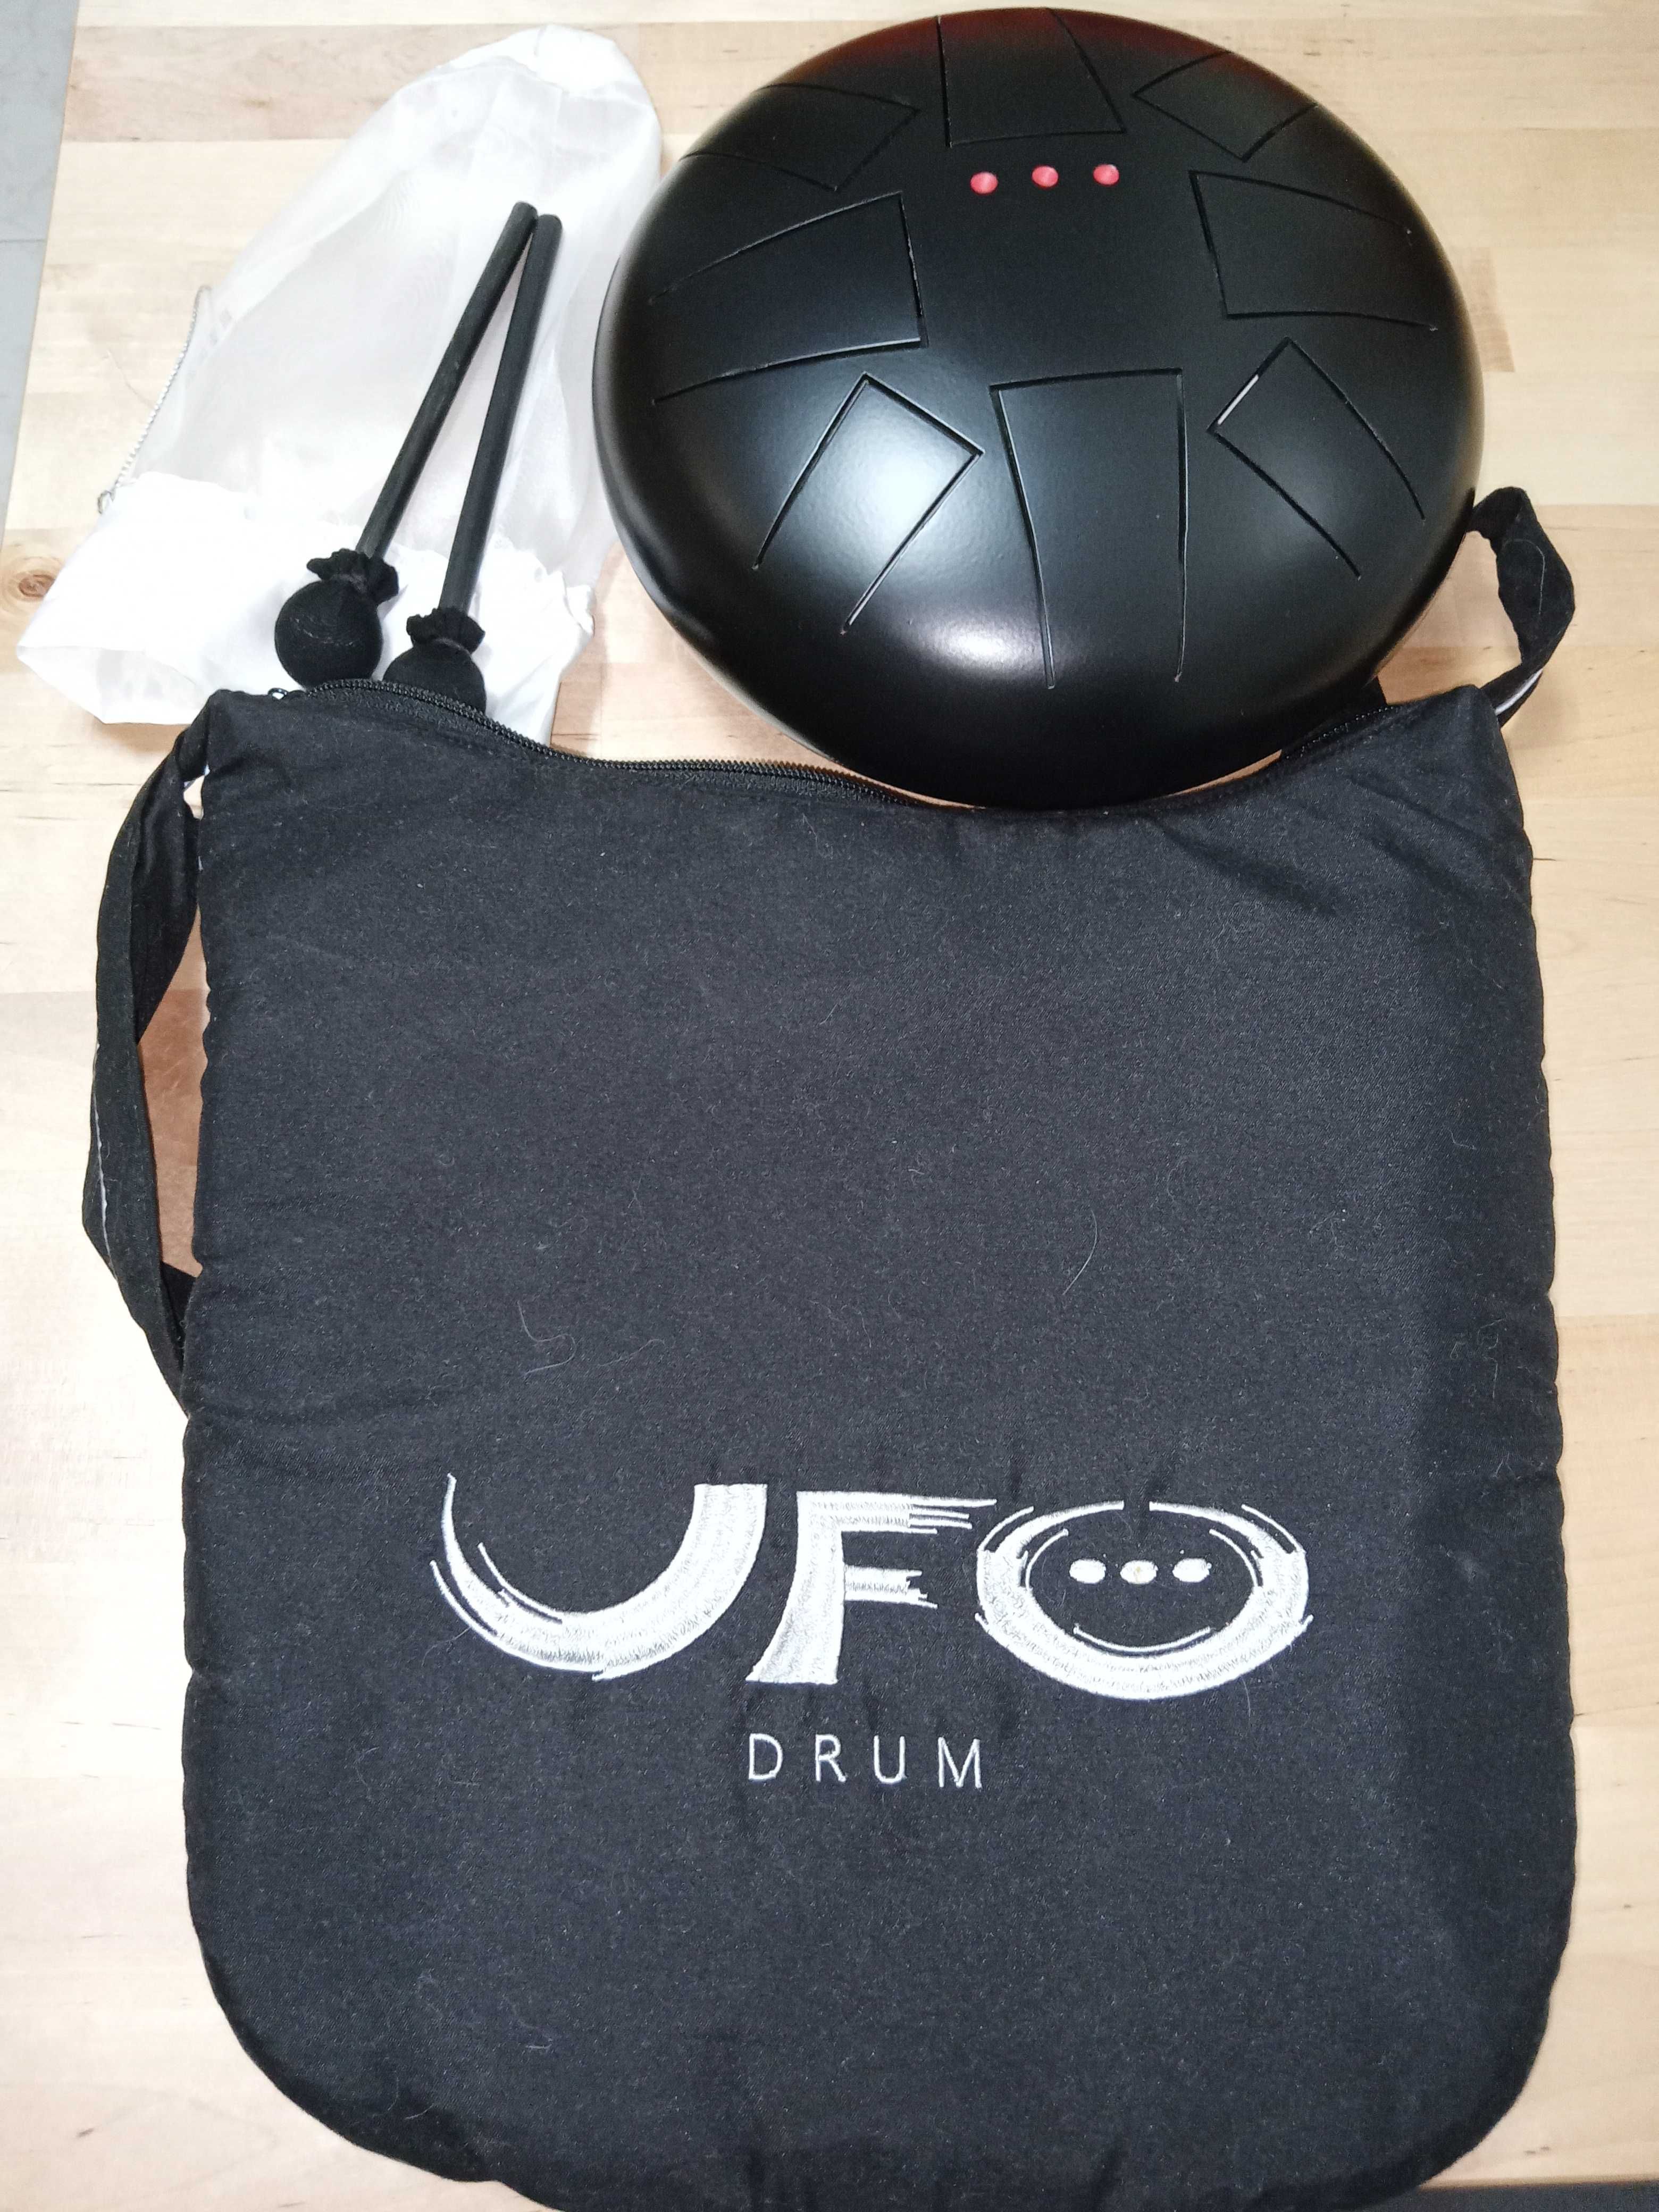 Drum UFO completo